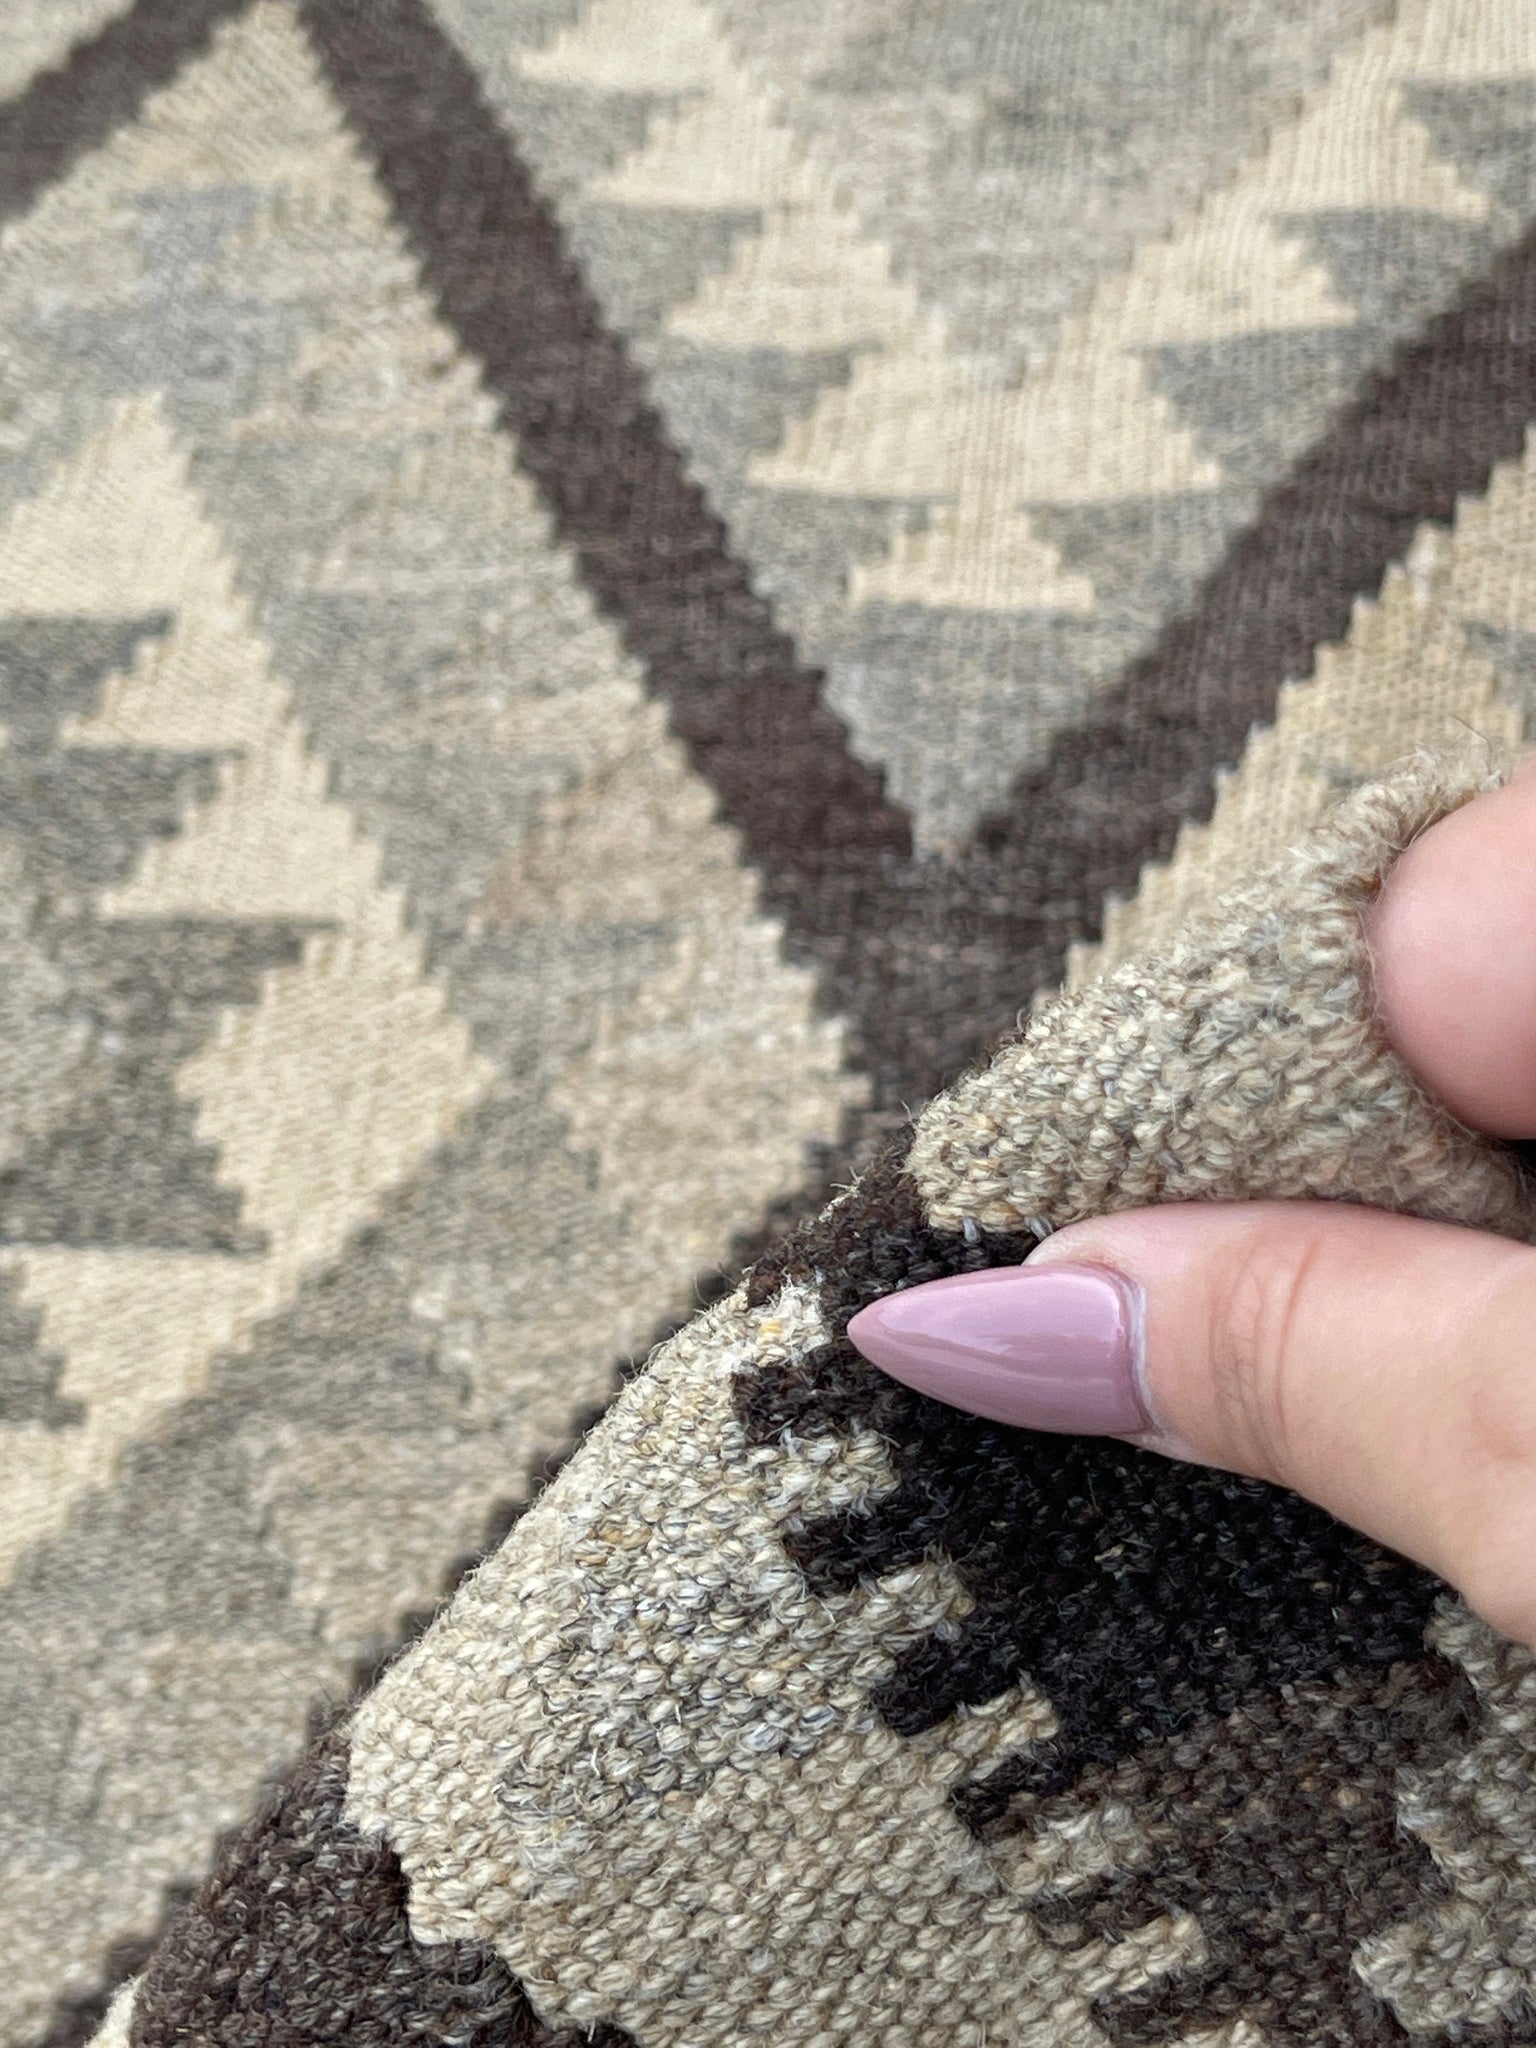 5x7 (150x200) Handmade Kilim Afghan Rug | Grey Gray Beige Gold Brown | Flatweave Tribal Nomadic Turkish Moroccan Outdoor Wool